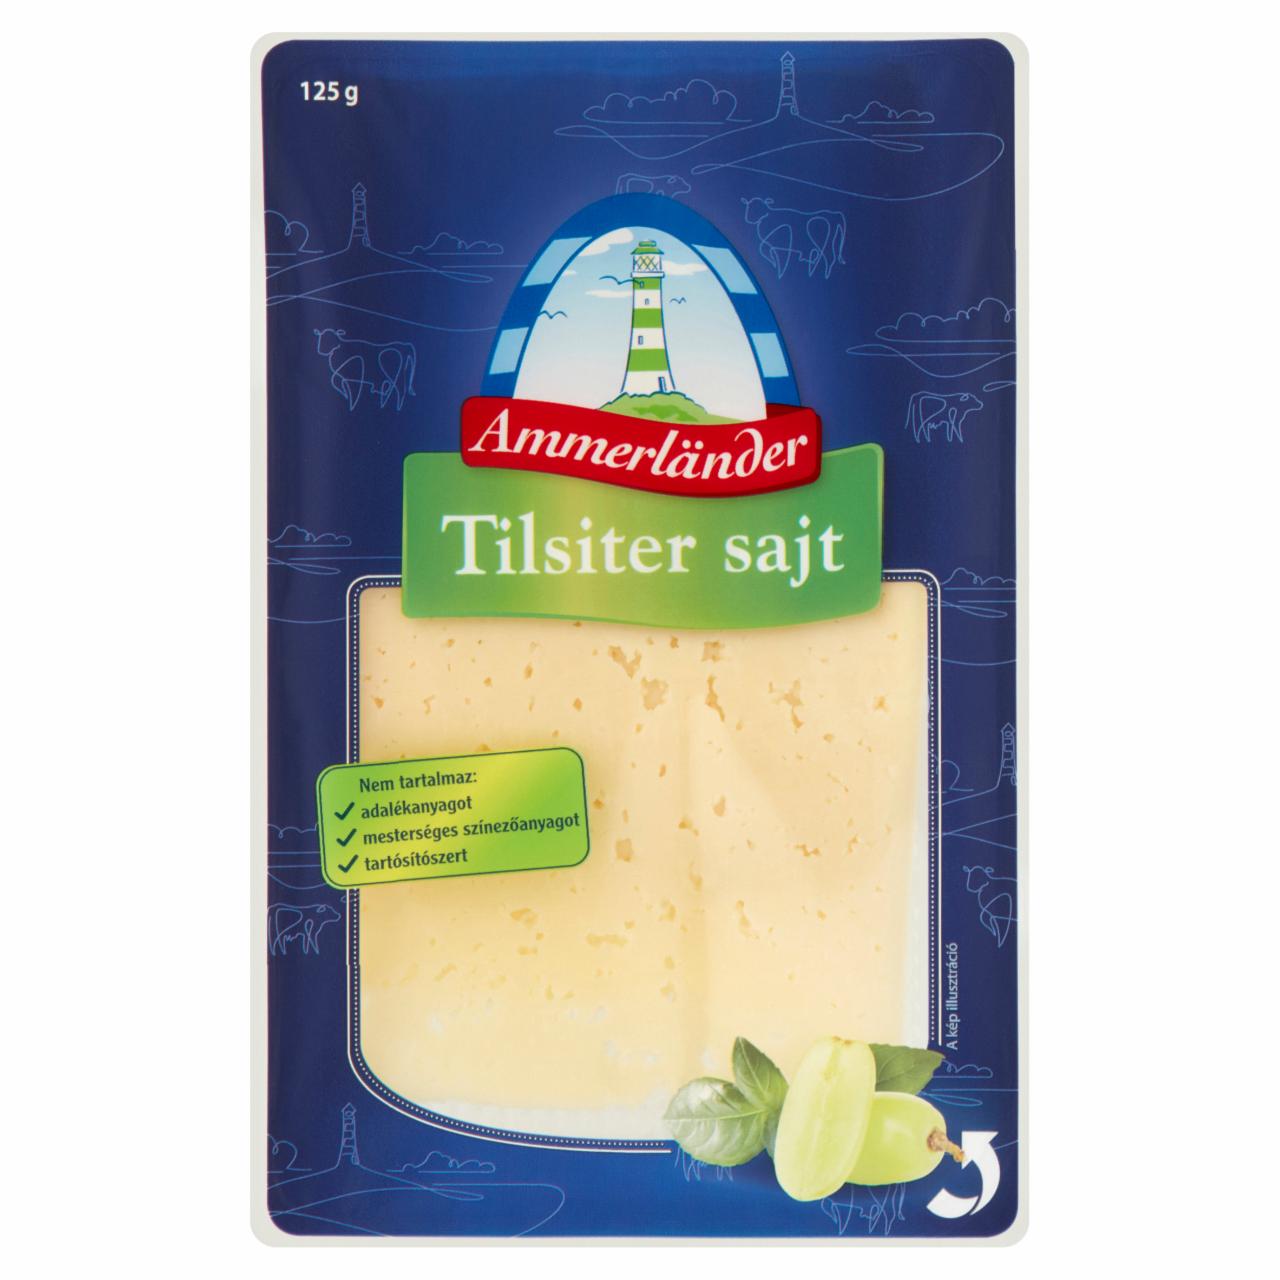 Képek - Ammerländer szeletelt tilsiter sajt 125 g